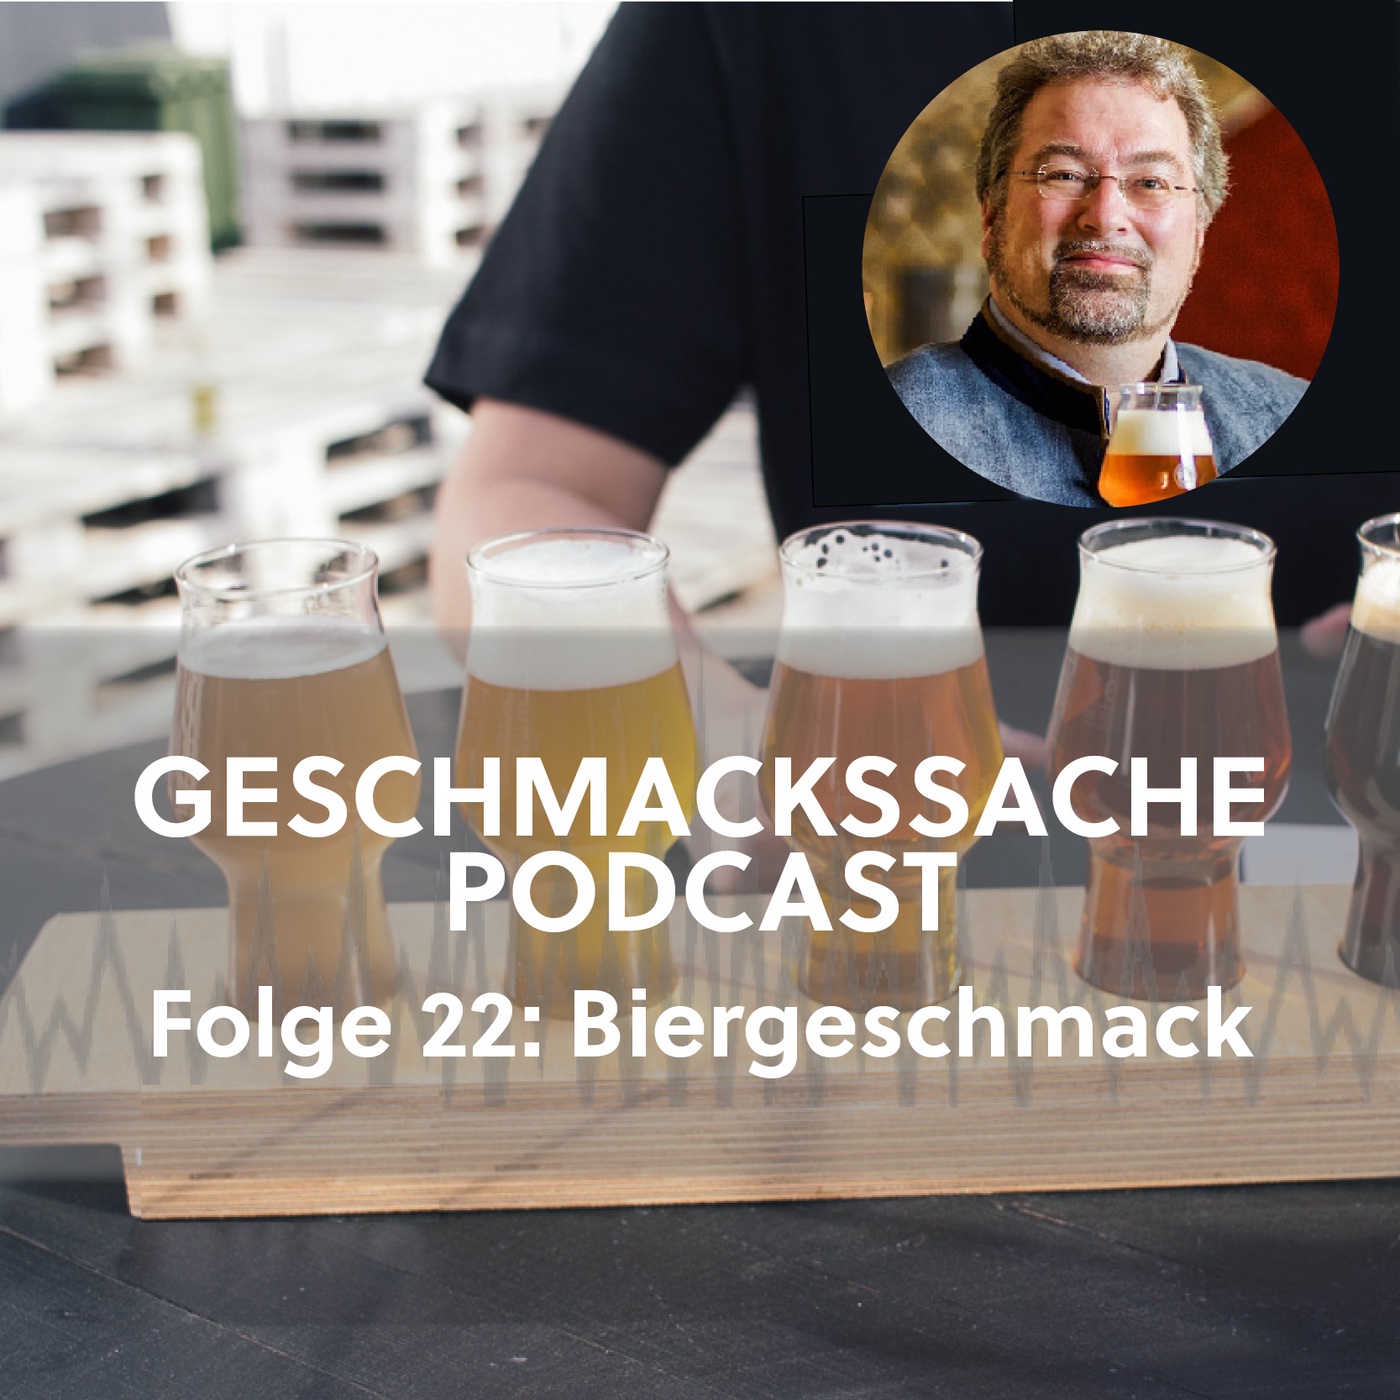 Ein Gespräch über Biergeschmack und die deutsche Bierlandschaft